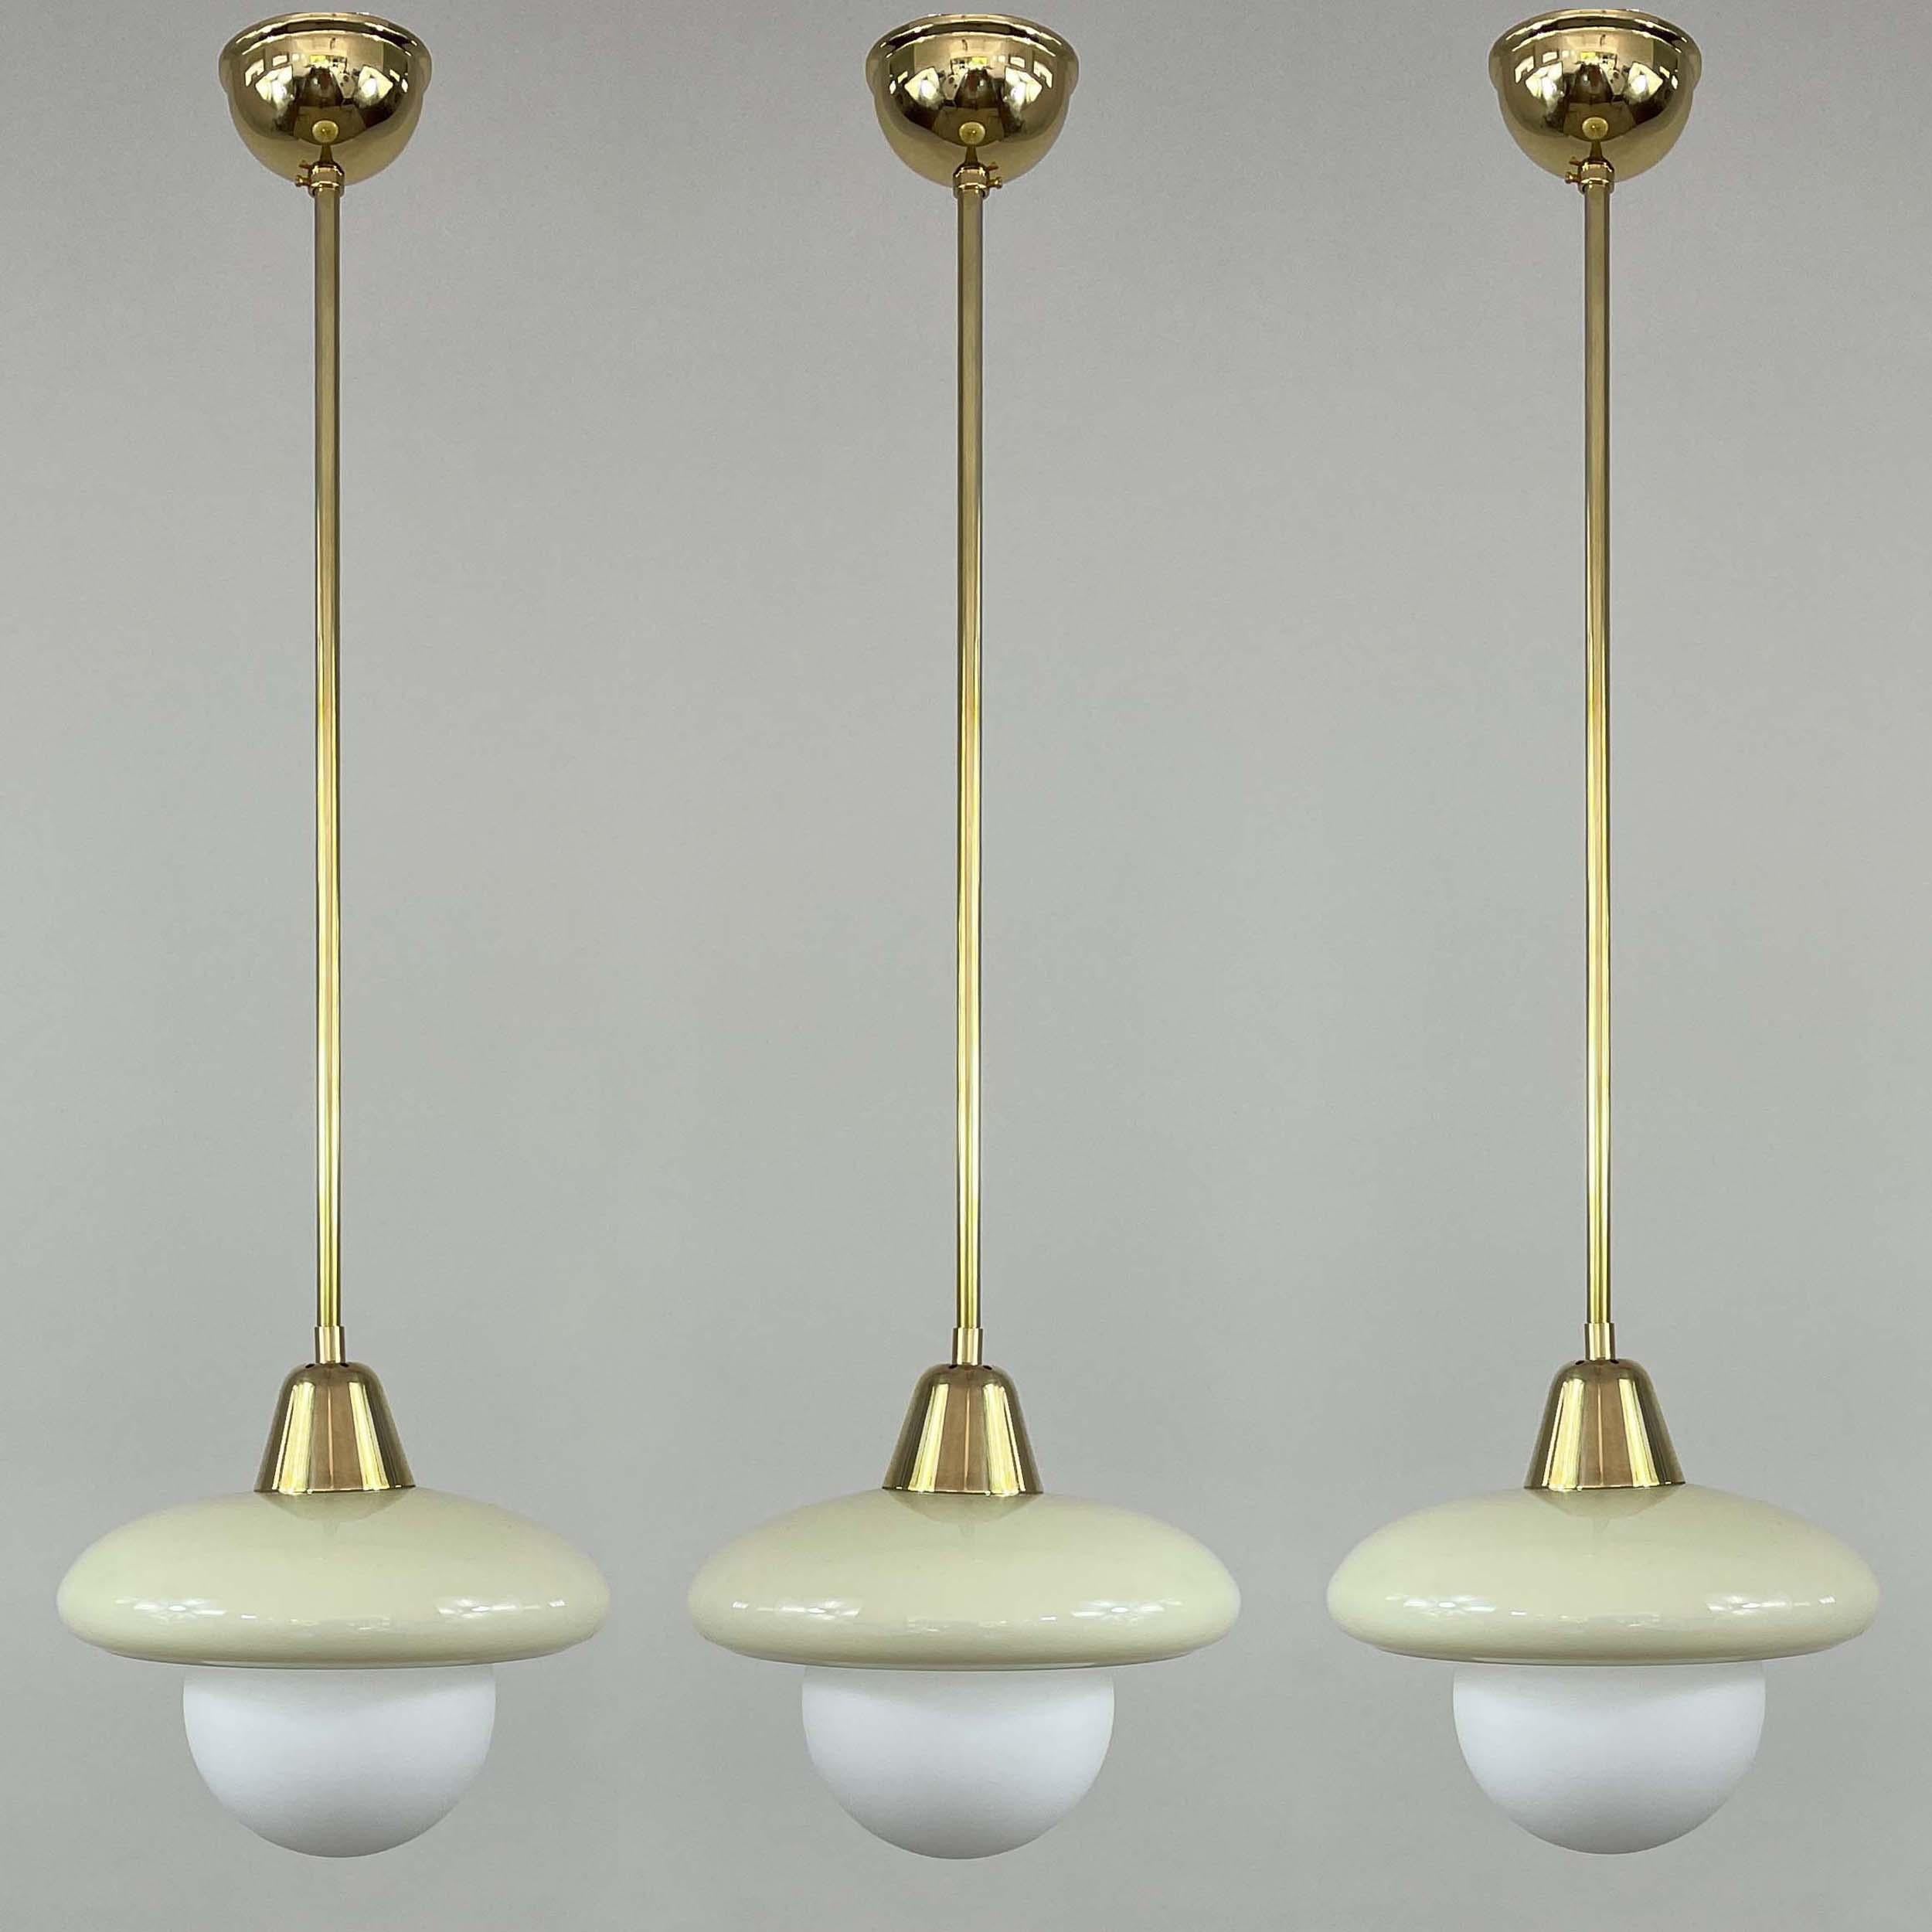 Diese elegante, minimalistische Art-Déco-Hängeleuchte wurde in den 1920er bis 1930er Jahren während der Bauhaus-Periode in Deutschland entworfen und hergestellt. 

Die Leuchte hat einen runden, cremefarbenen Opalin-Lampenschirm und Messingbeschläge.